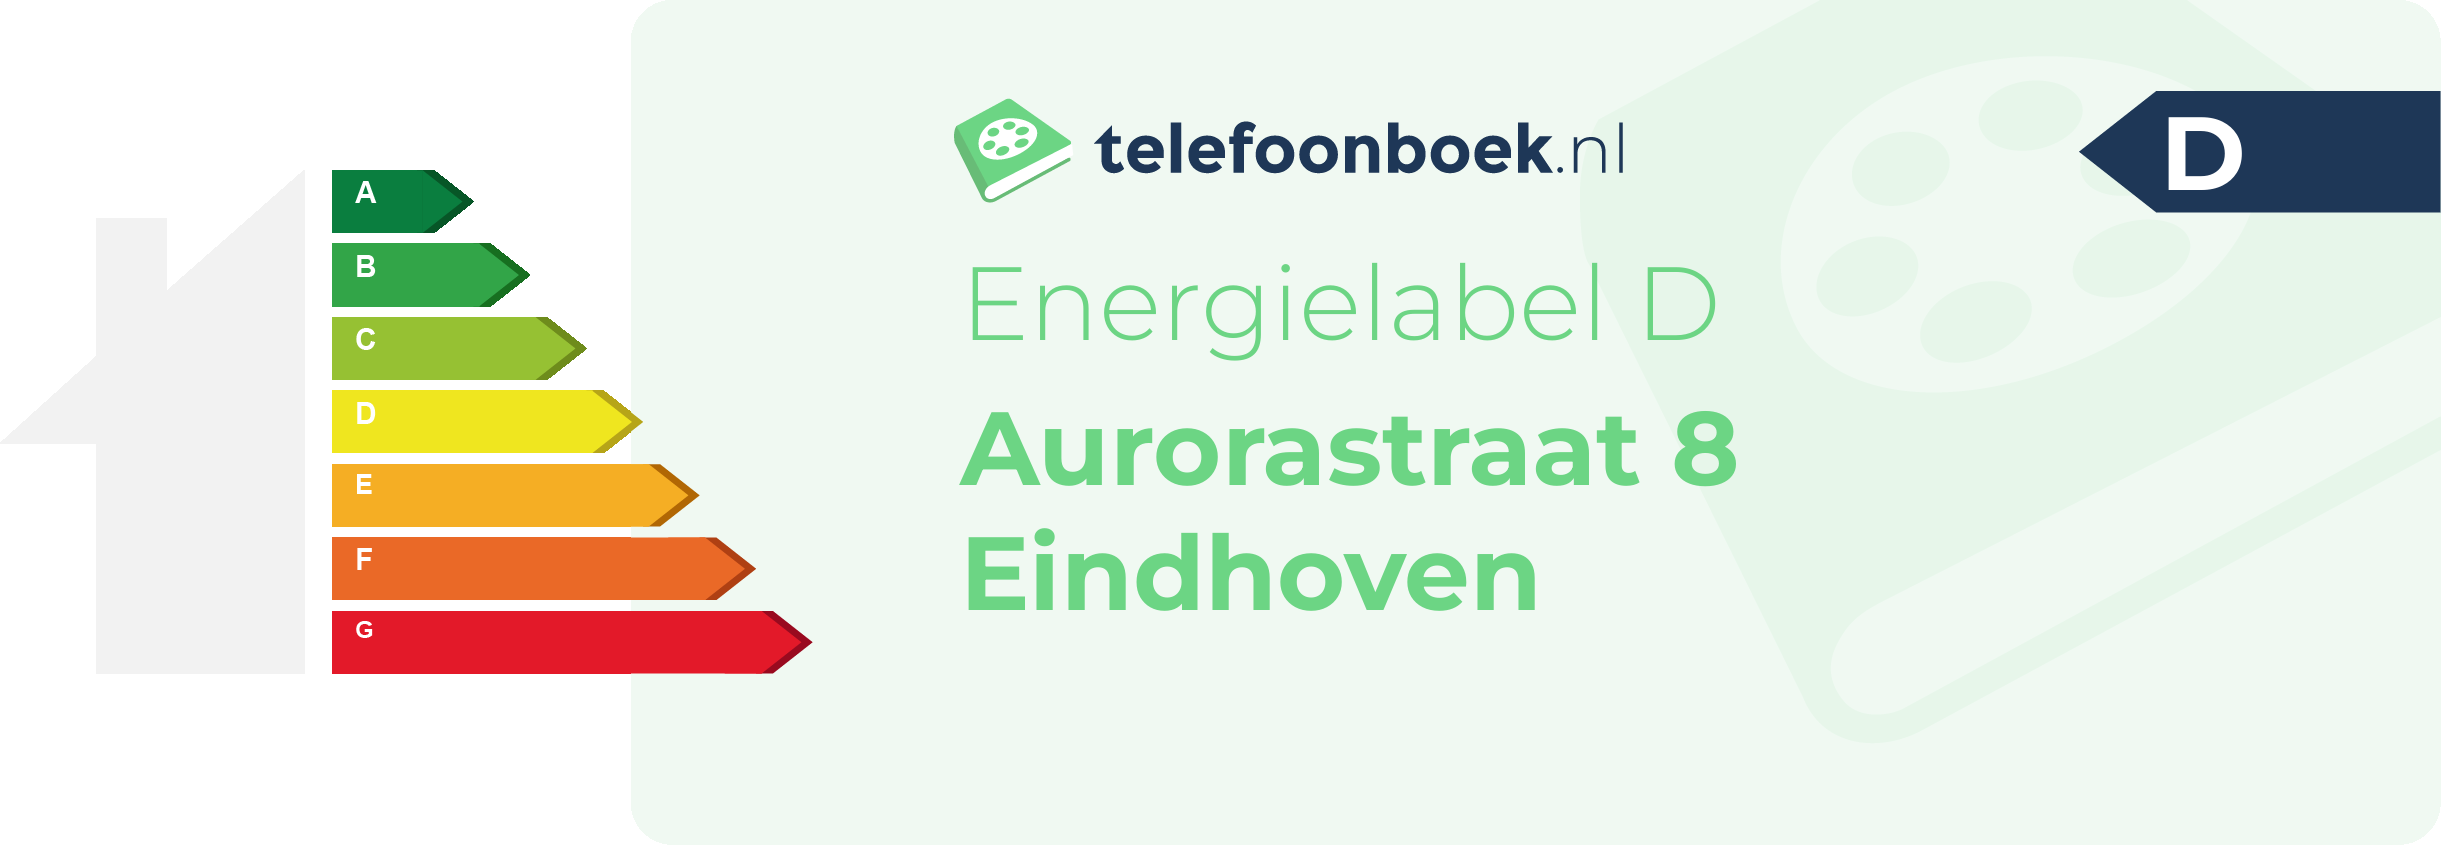 Energielabel Aurorastraat 8 Eindhoven